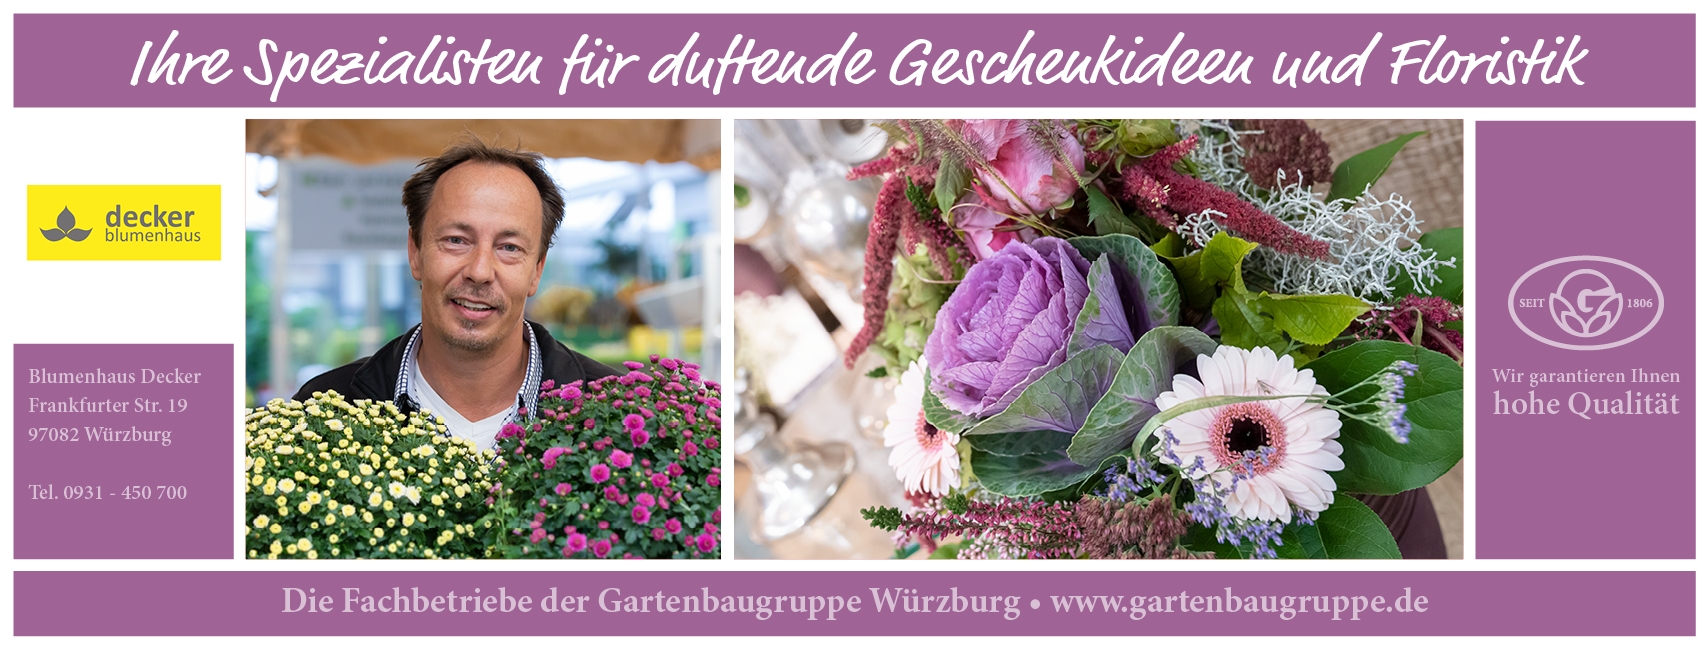 Blumenhaus Decker - Gartenbaugruppe Würzburg